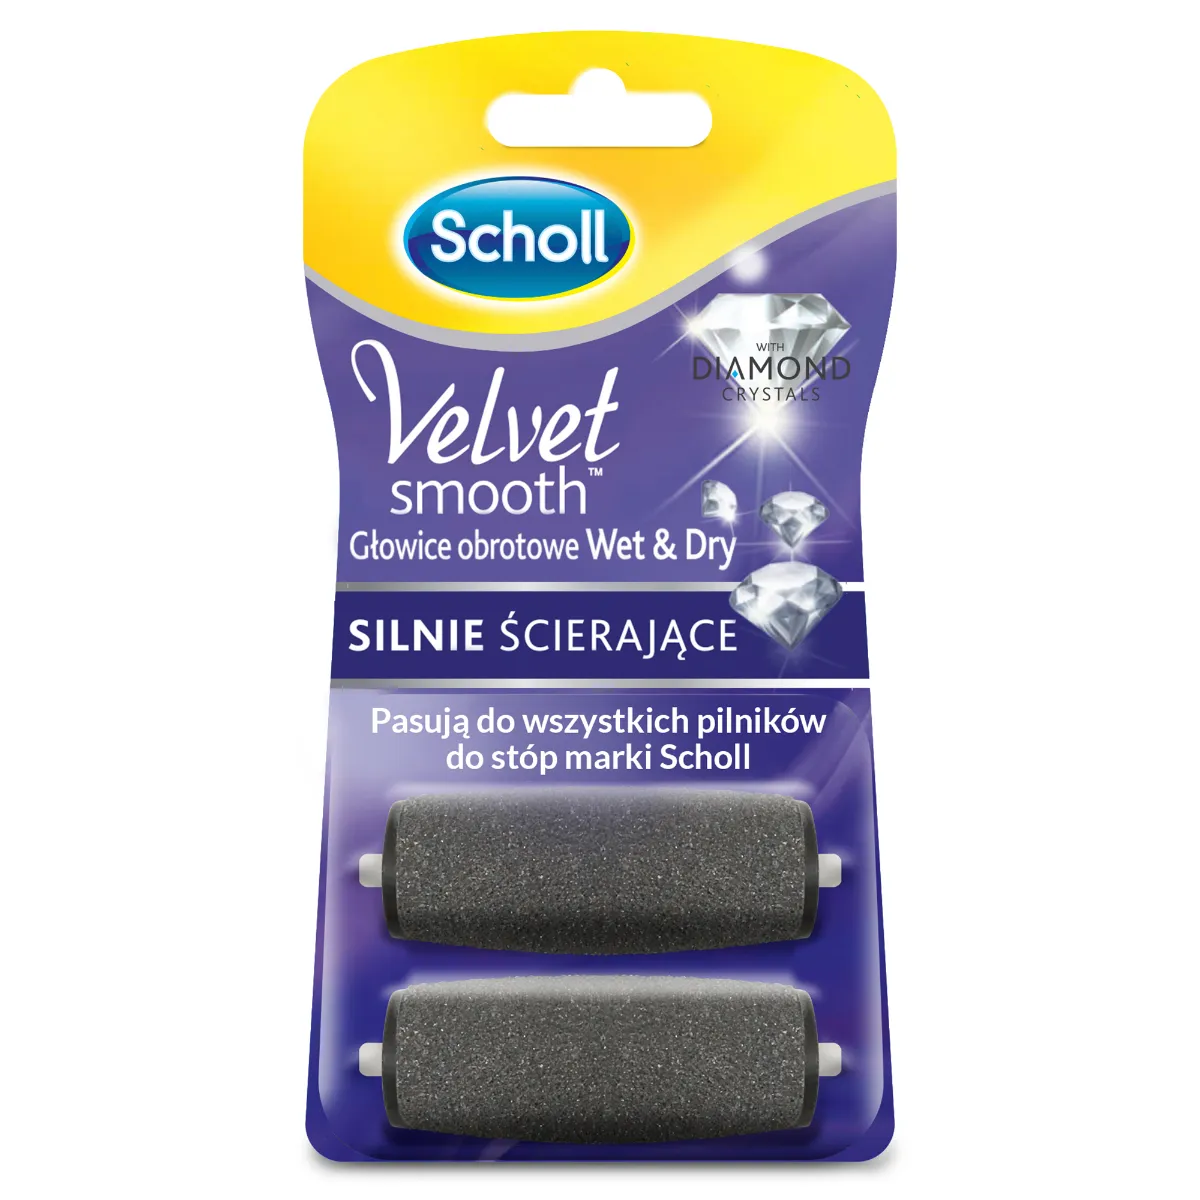 SCHOLL Velvet Smooth wymienne głowice do elektrycznego pilnika "Wet&Dry", 1 zest. 